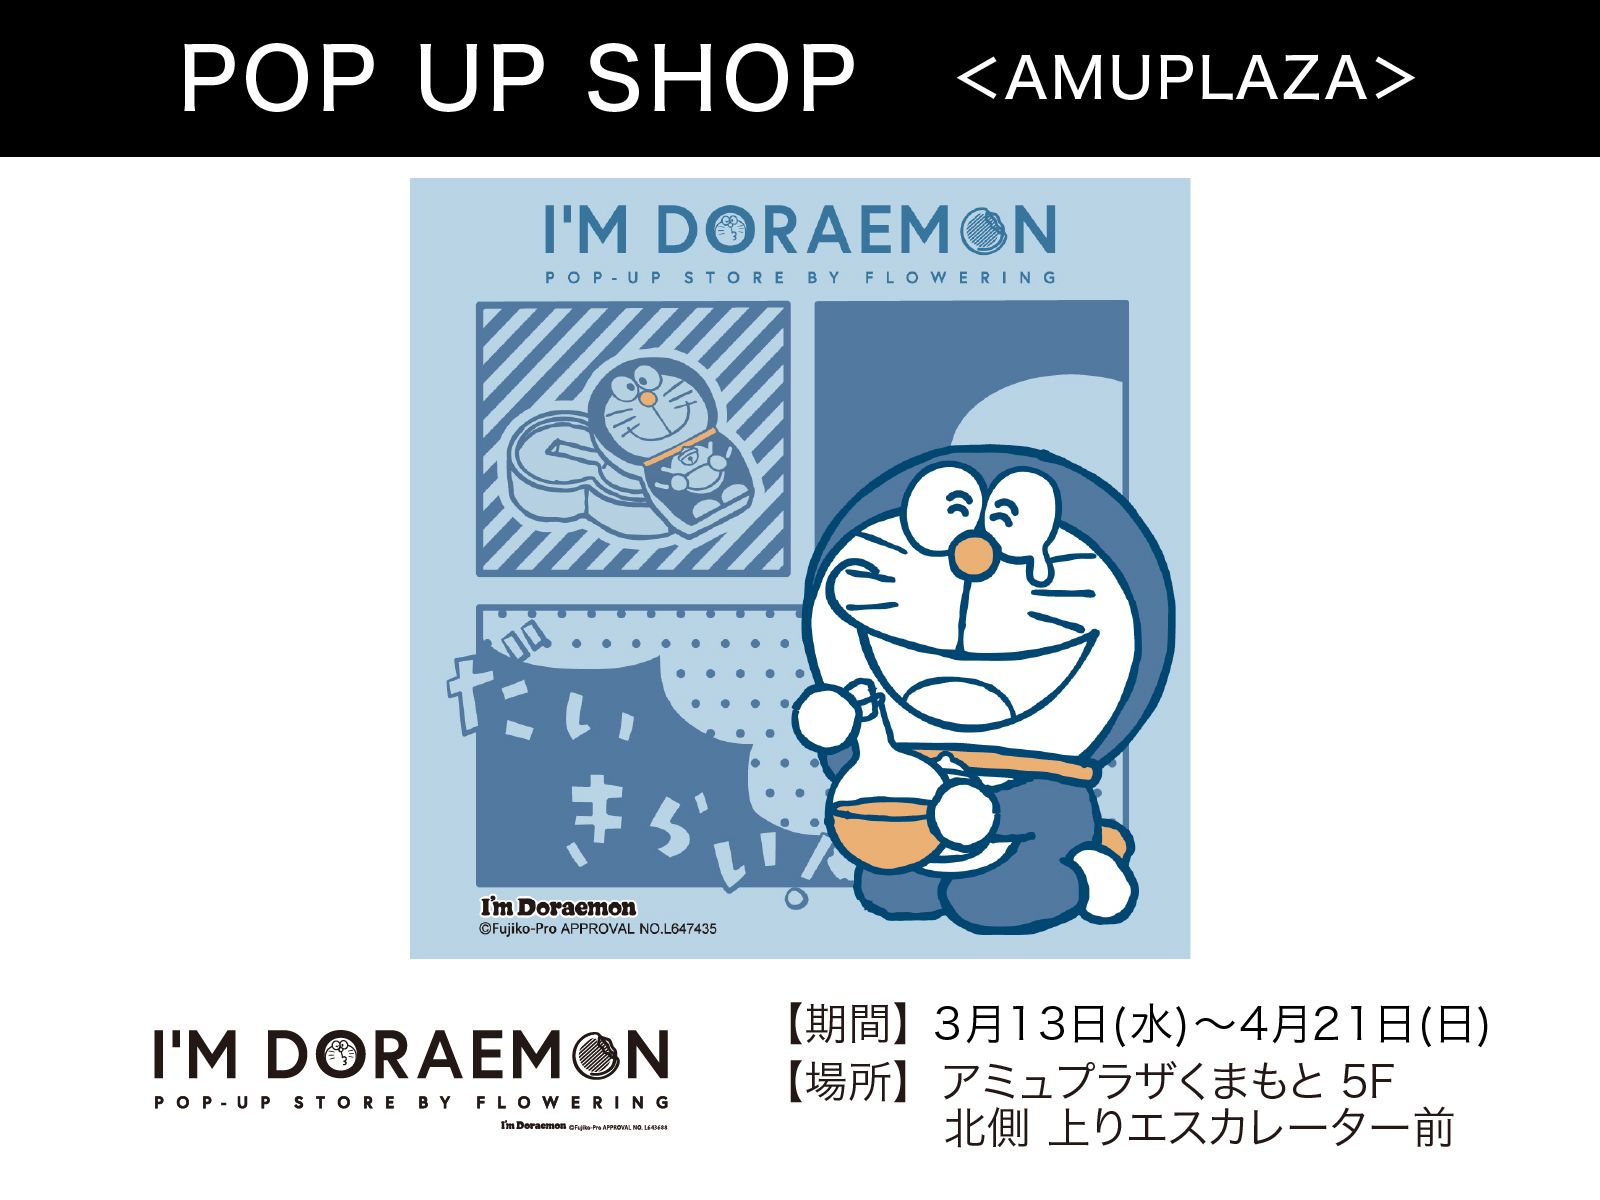 『I’M DORAEMON POP-UP STORE BY FLOWERING』3月13日(水)～4月21日(日) 期間限定オープン！＠アミュプラザくまもと 5F